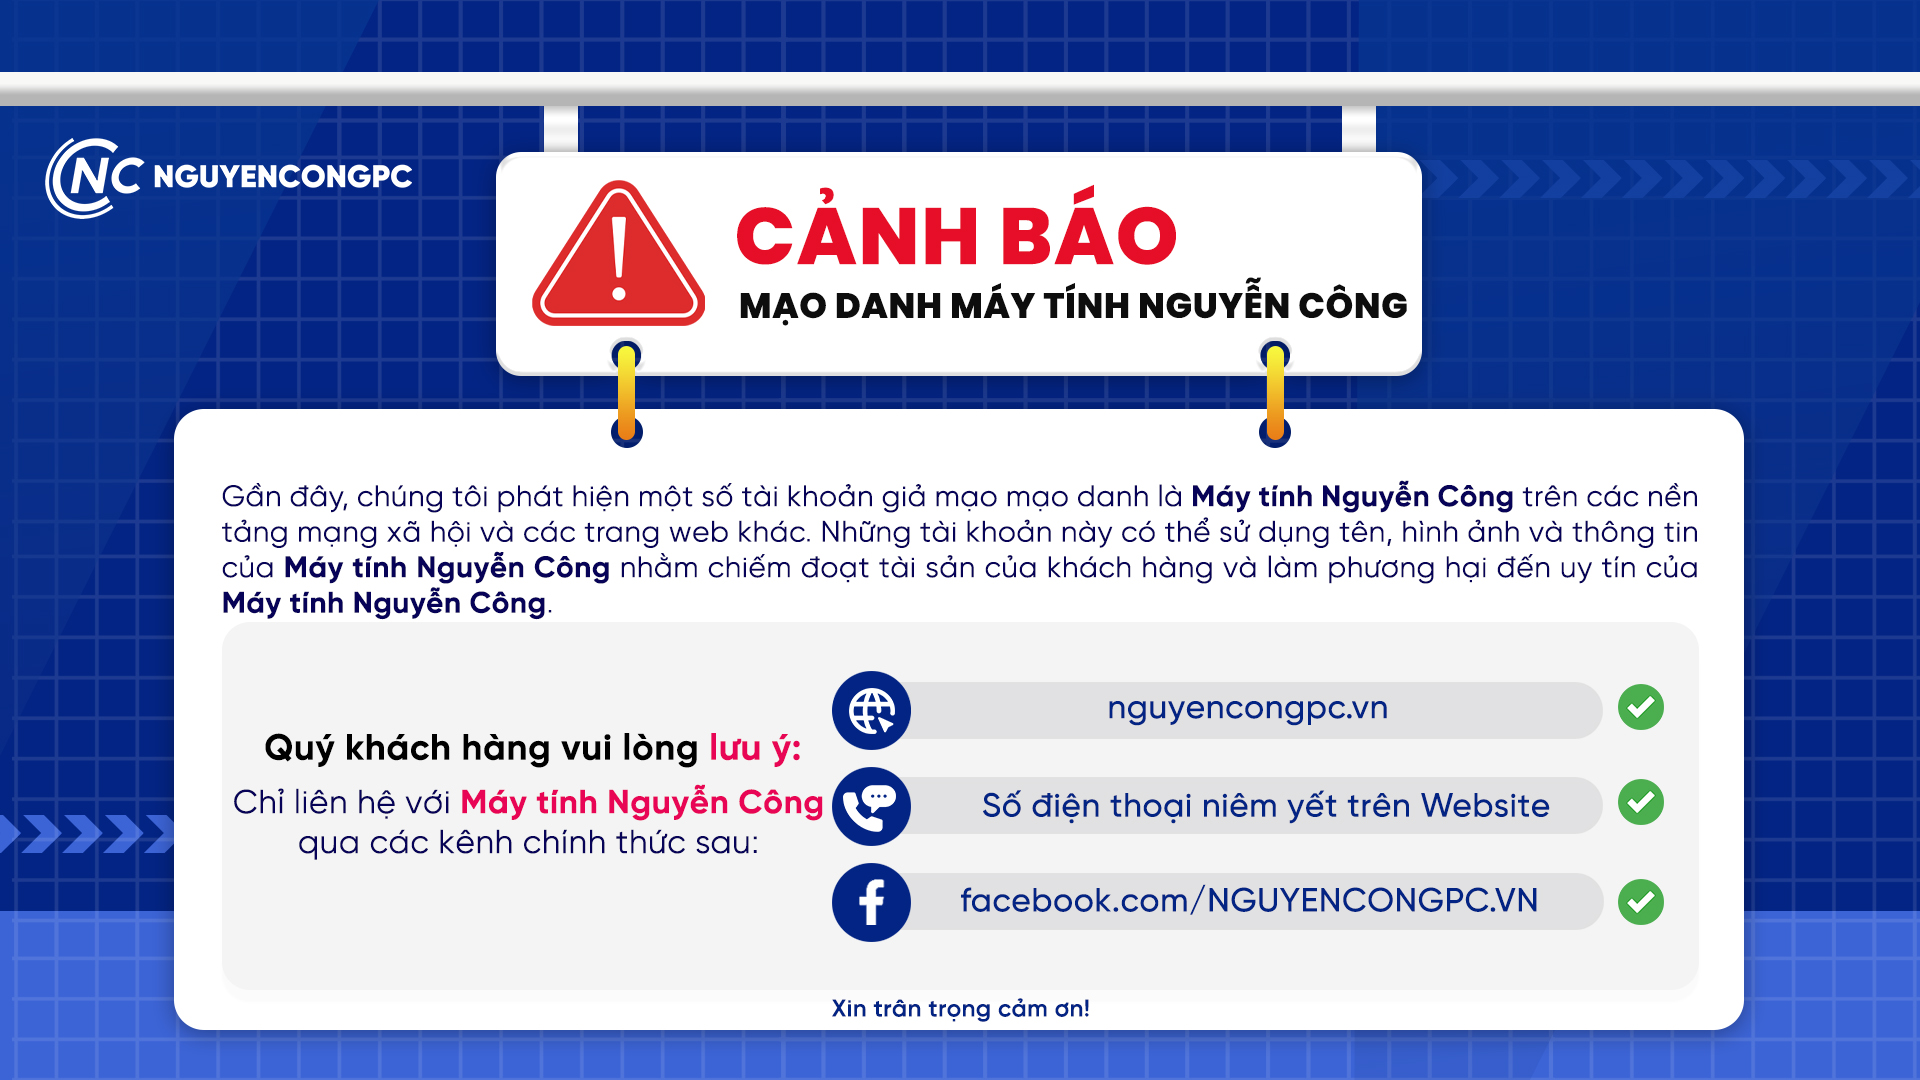 Cảnh báo tình trạng giả mạo Máy tính Nguyễn Công để lừa đảo khách hàng